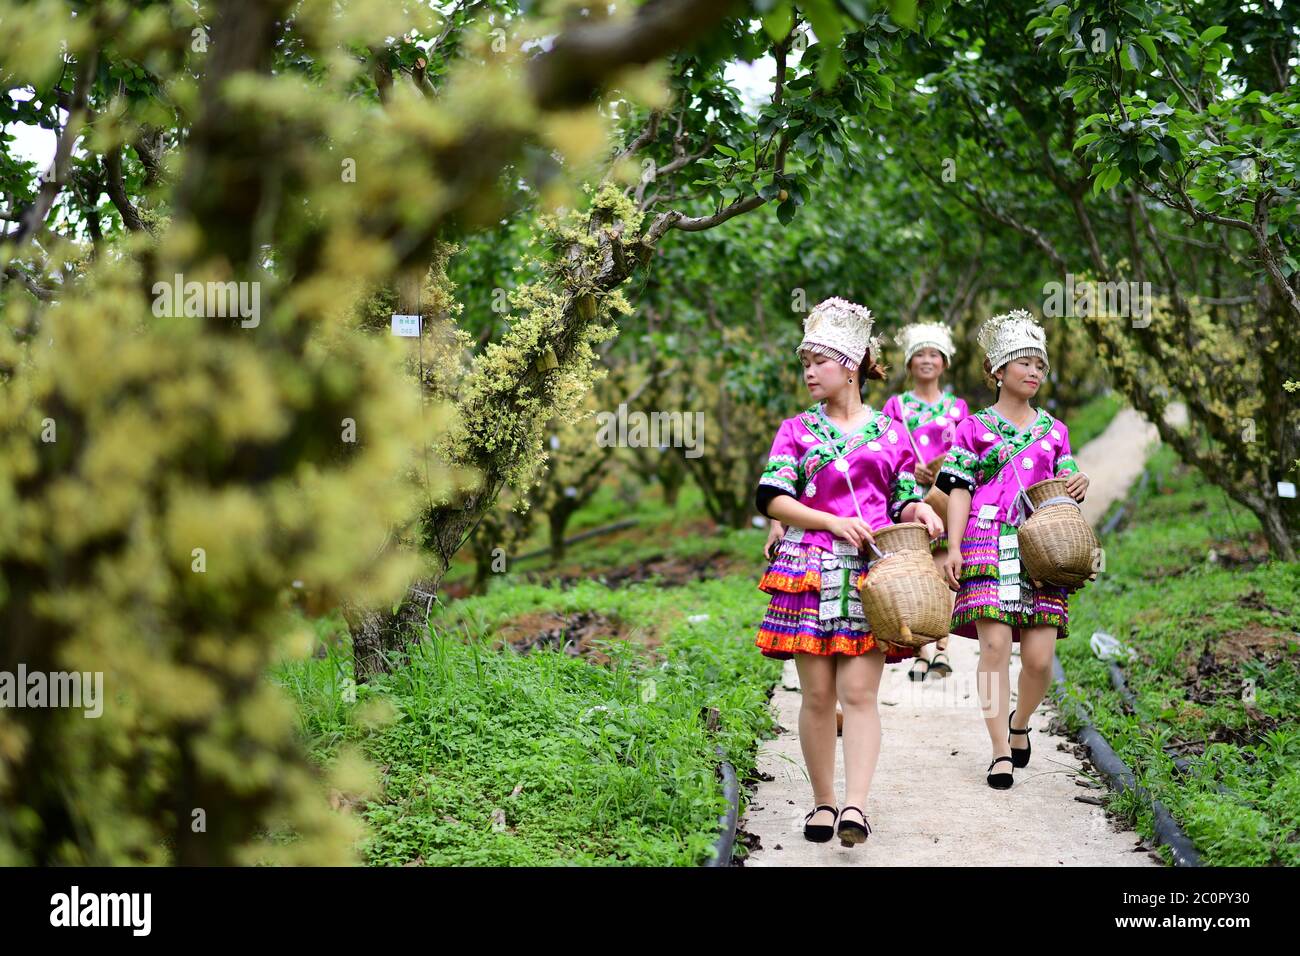 (200612) -- JINPING, 12 giugno 2020 (Xinhua) -- Villagers camminare sulla strada per raccogliere i fiori di dendrobium nobile ad una base di coltivazione nel villaggio di Longchi di Dunzhai città nella contea di Jinping, provincia di Guizhou della Cina sud-occidentale, 12 giugno 2020. Sfruttando appieno le ampie aree della foresta e l'ampia luce del sole, le autorità locali hanno incoraggiato la gente a piantare erbe medicinali cinesi, tra cui il dendrobium nobile e a mantenere le api tra gli alberi senza danneggiare l'ambiente ecologico. Attualmente, la contea di Jinping ha più di 11,000 mu (circa 733 ettari) di dendrobium nobile, circa 91,000 mu (circa 6, Foto Stock